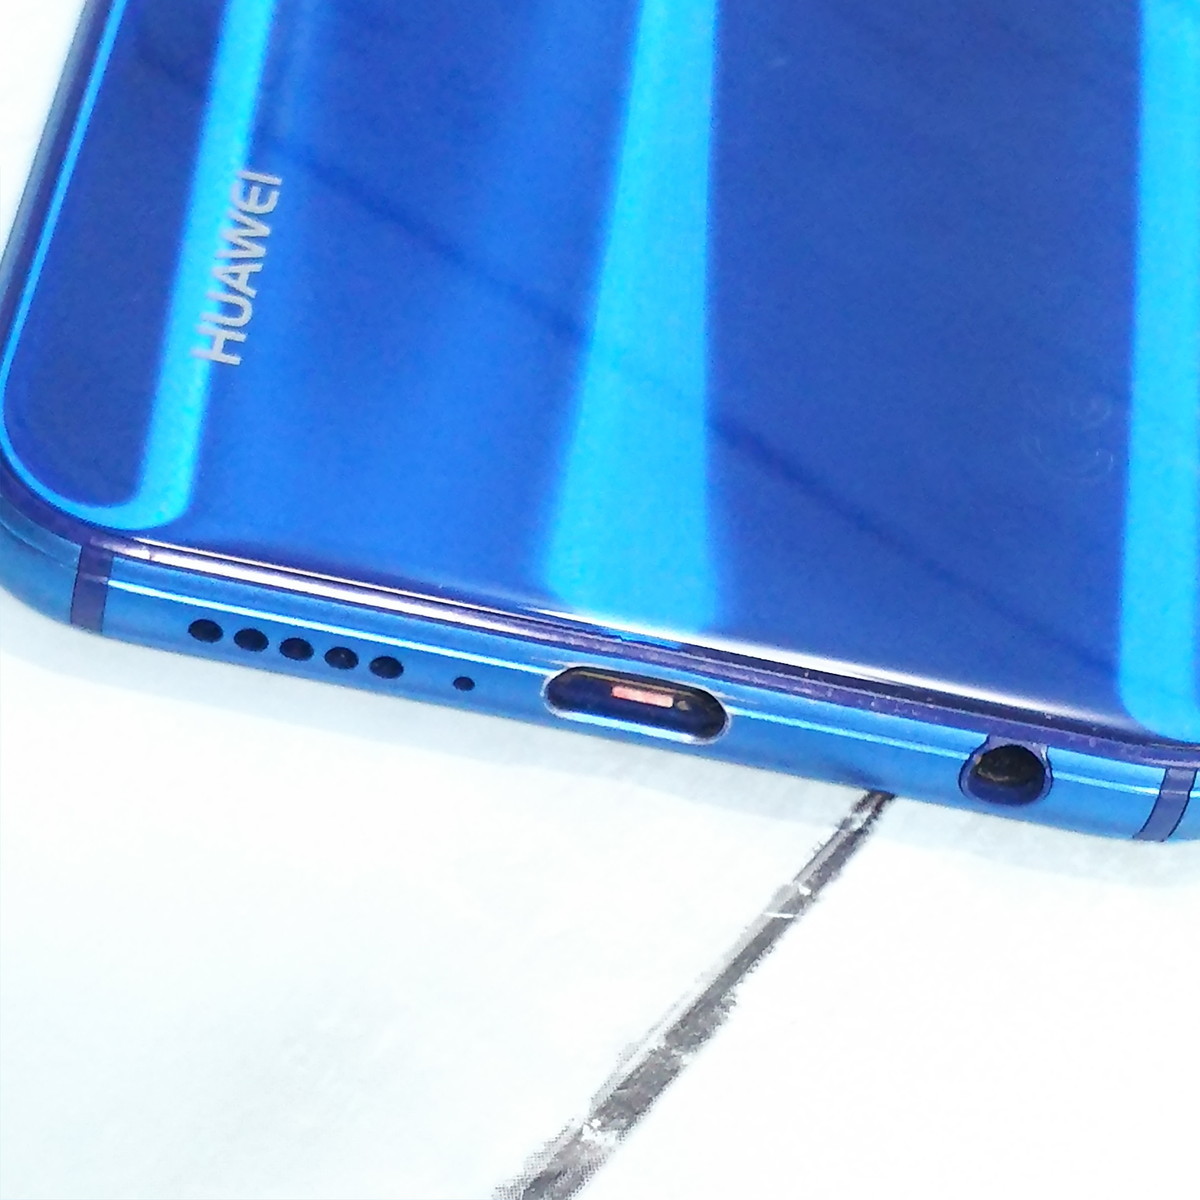 Huawei Y!mobile Huawei P20 lite ANE-LX2J (HWSDA2) クラインブルー 本体 白ロム SIMロック解除済み SIMフリー 871256_画像8